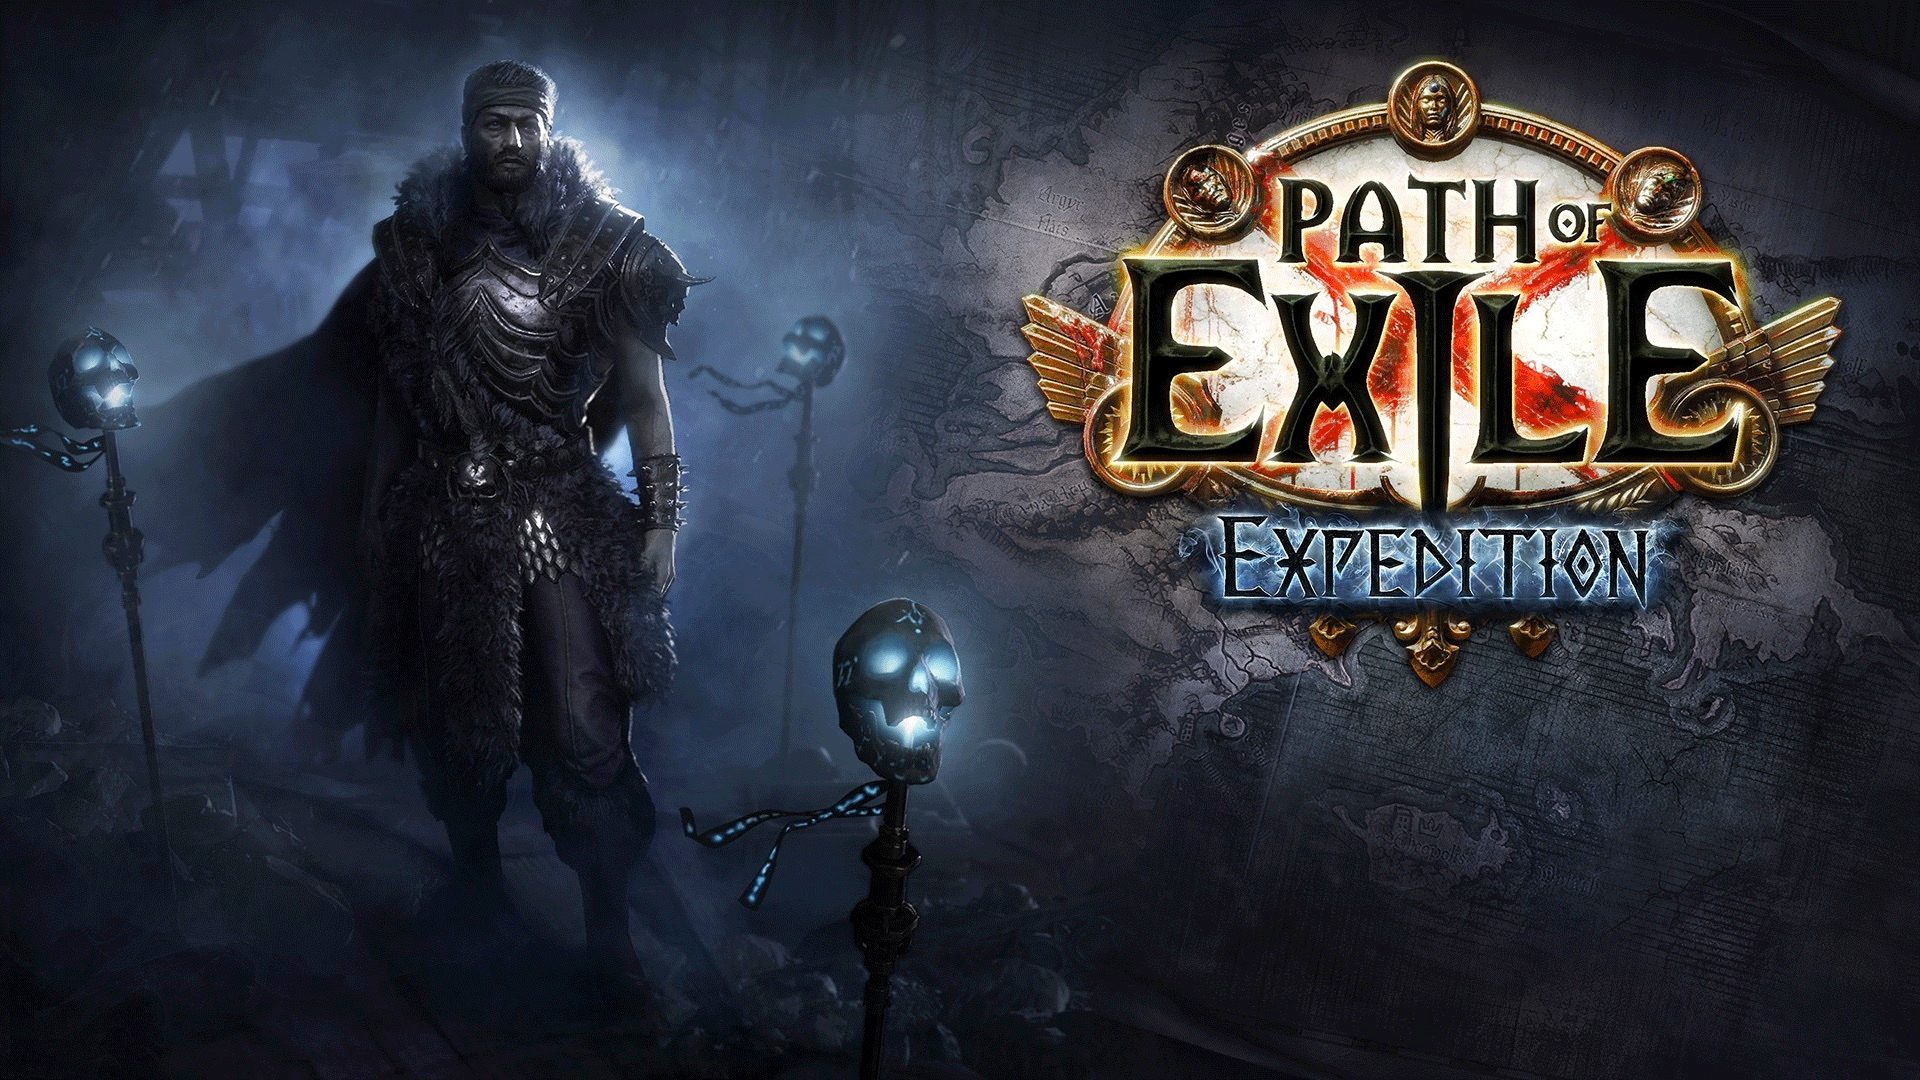 Partez en expédition dans la dernière extension de Path of Exile disponible aujourd’hui